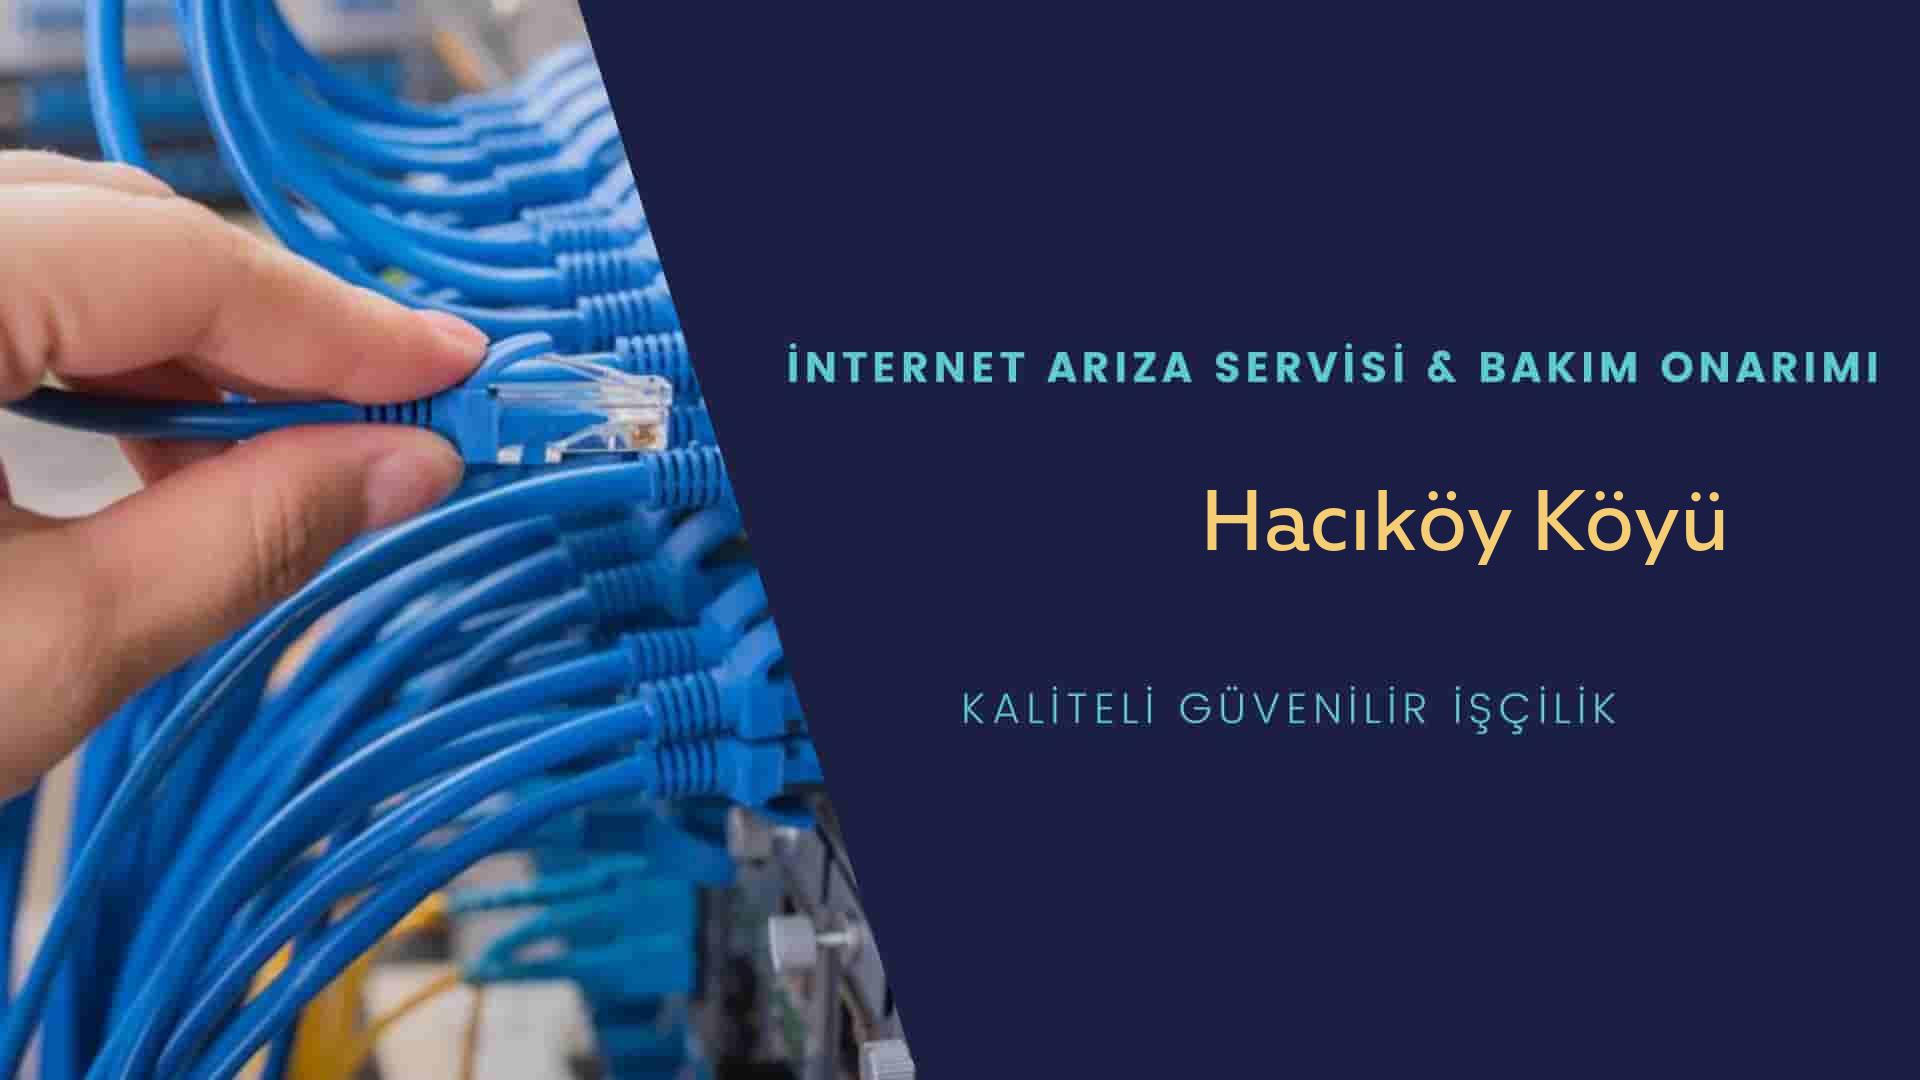 Hacıköy Köyü internet kablosu çekimi yapan yerler veya elektrikçiler mi? arıyorsunuz doğru yerdesiniz o zaman sizlere 7/24 yardımcı olacak profesyonel ustalarımız bir telefon kadar yakındır size.